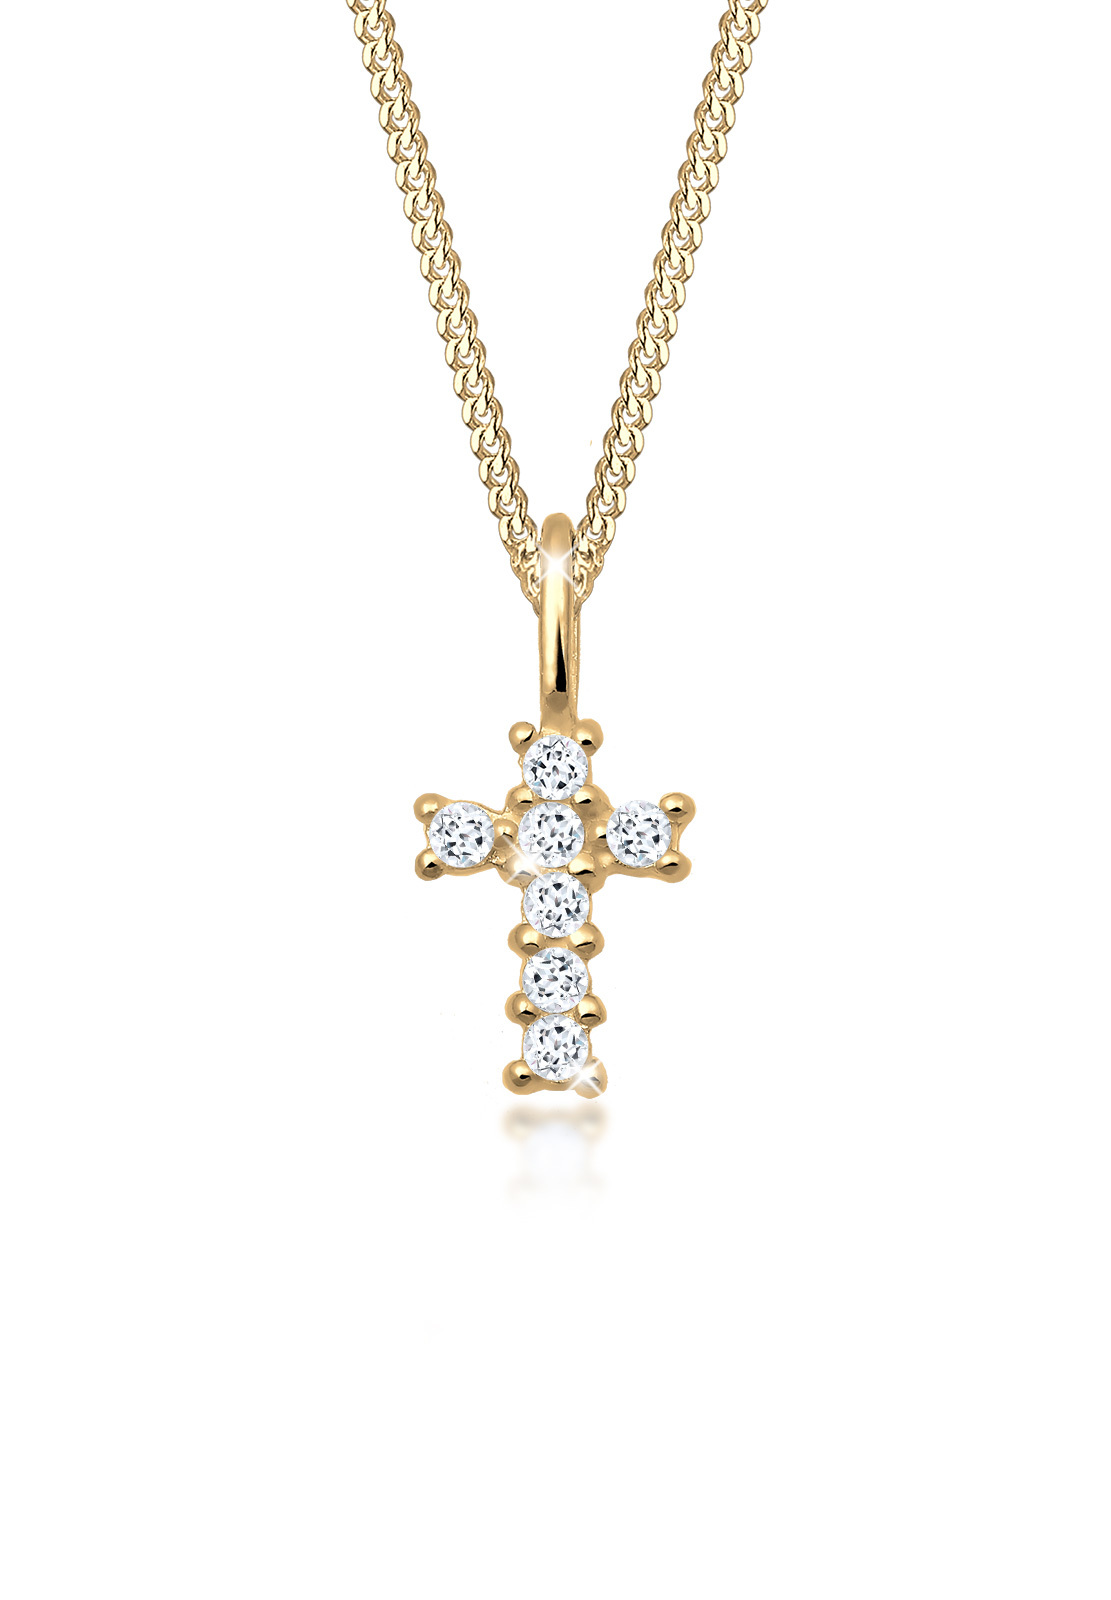 Halskette Kreuz | Topas ( Weiß ) | 585 Gelbgold